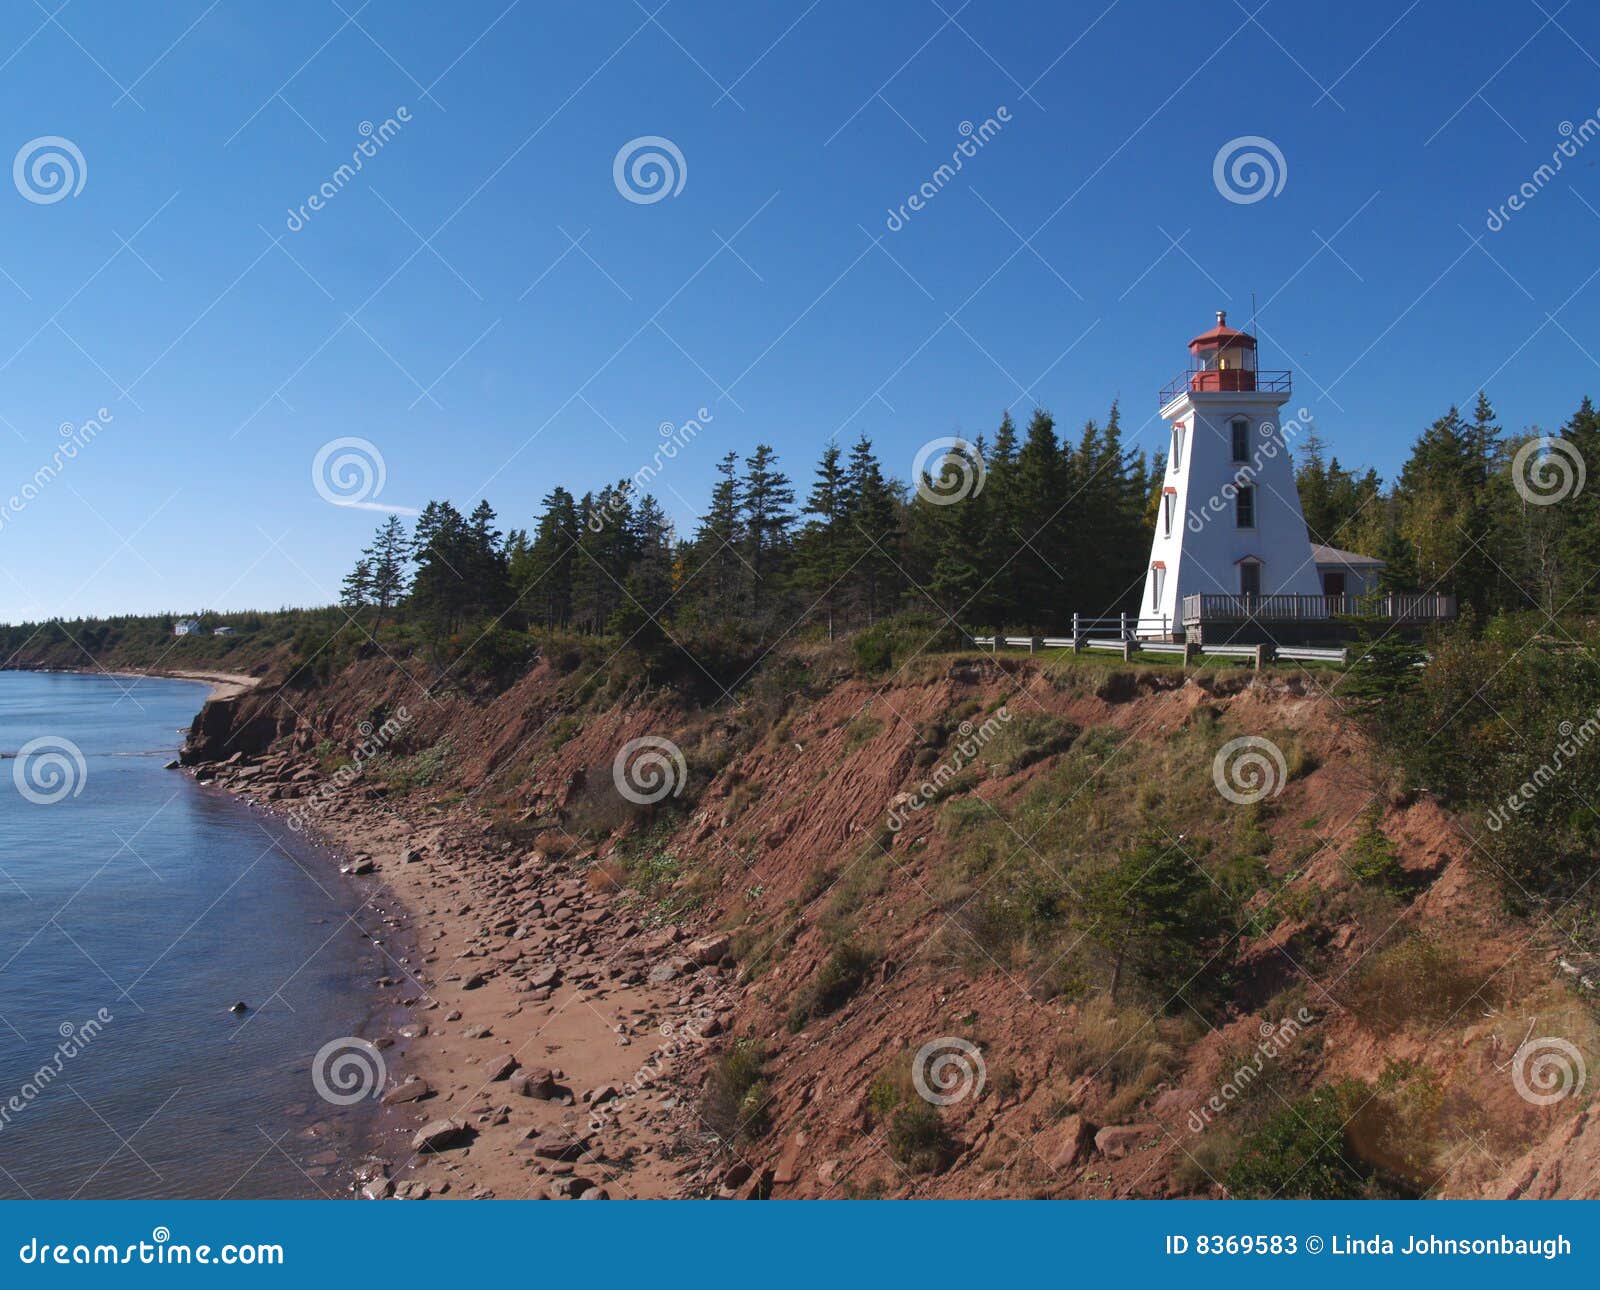 prince edward island lighthouse